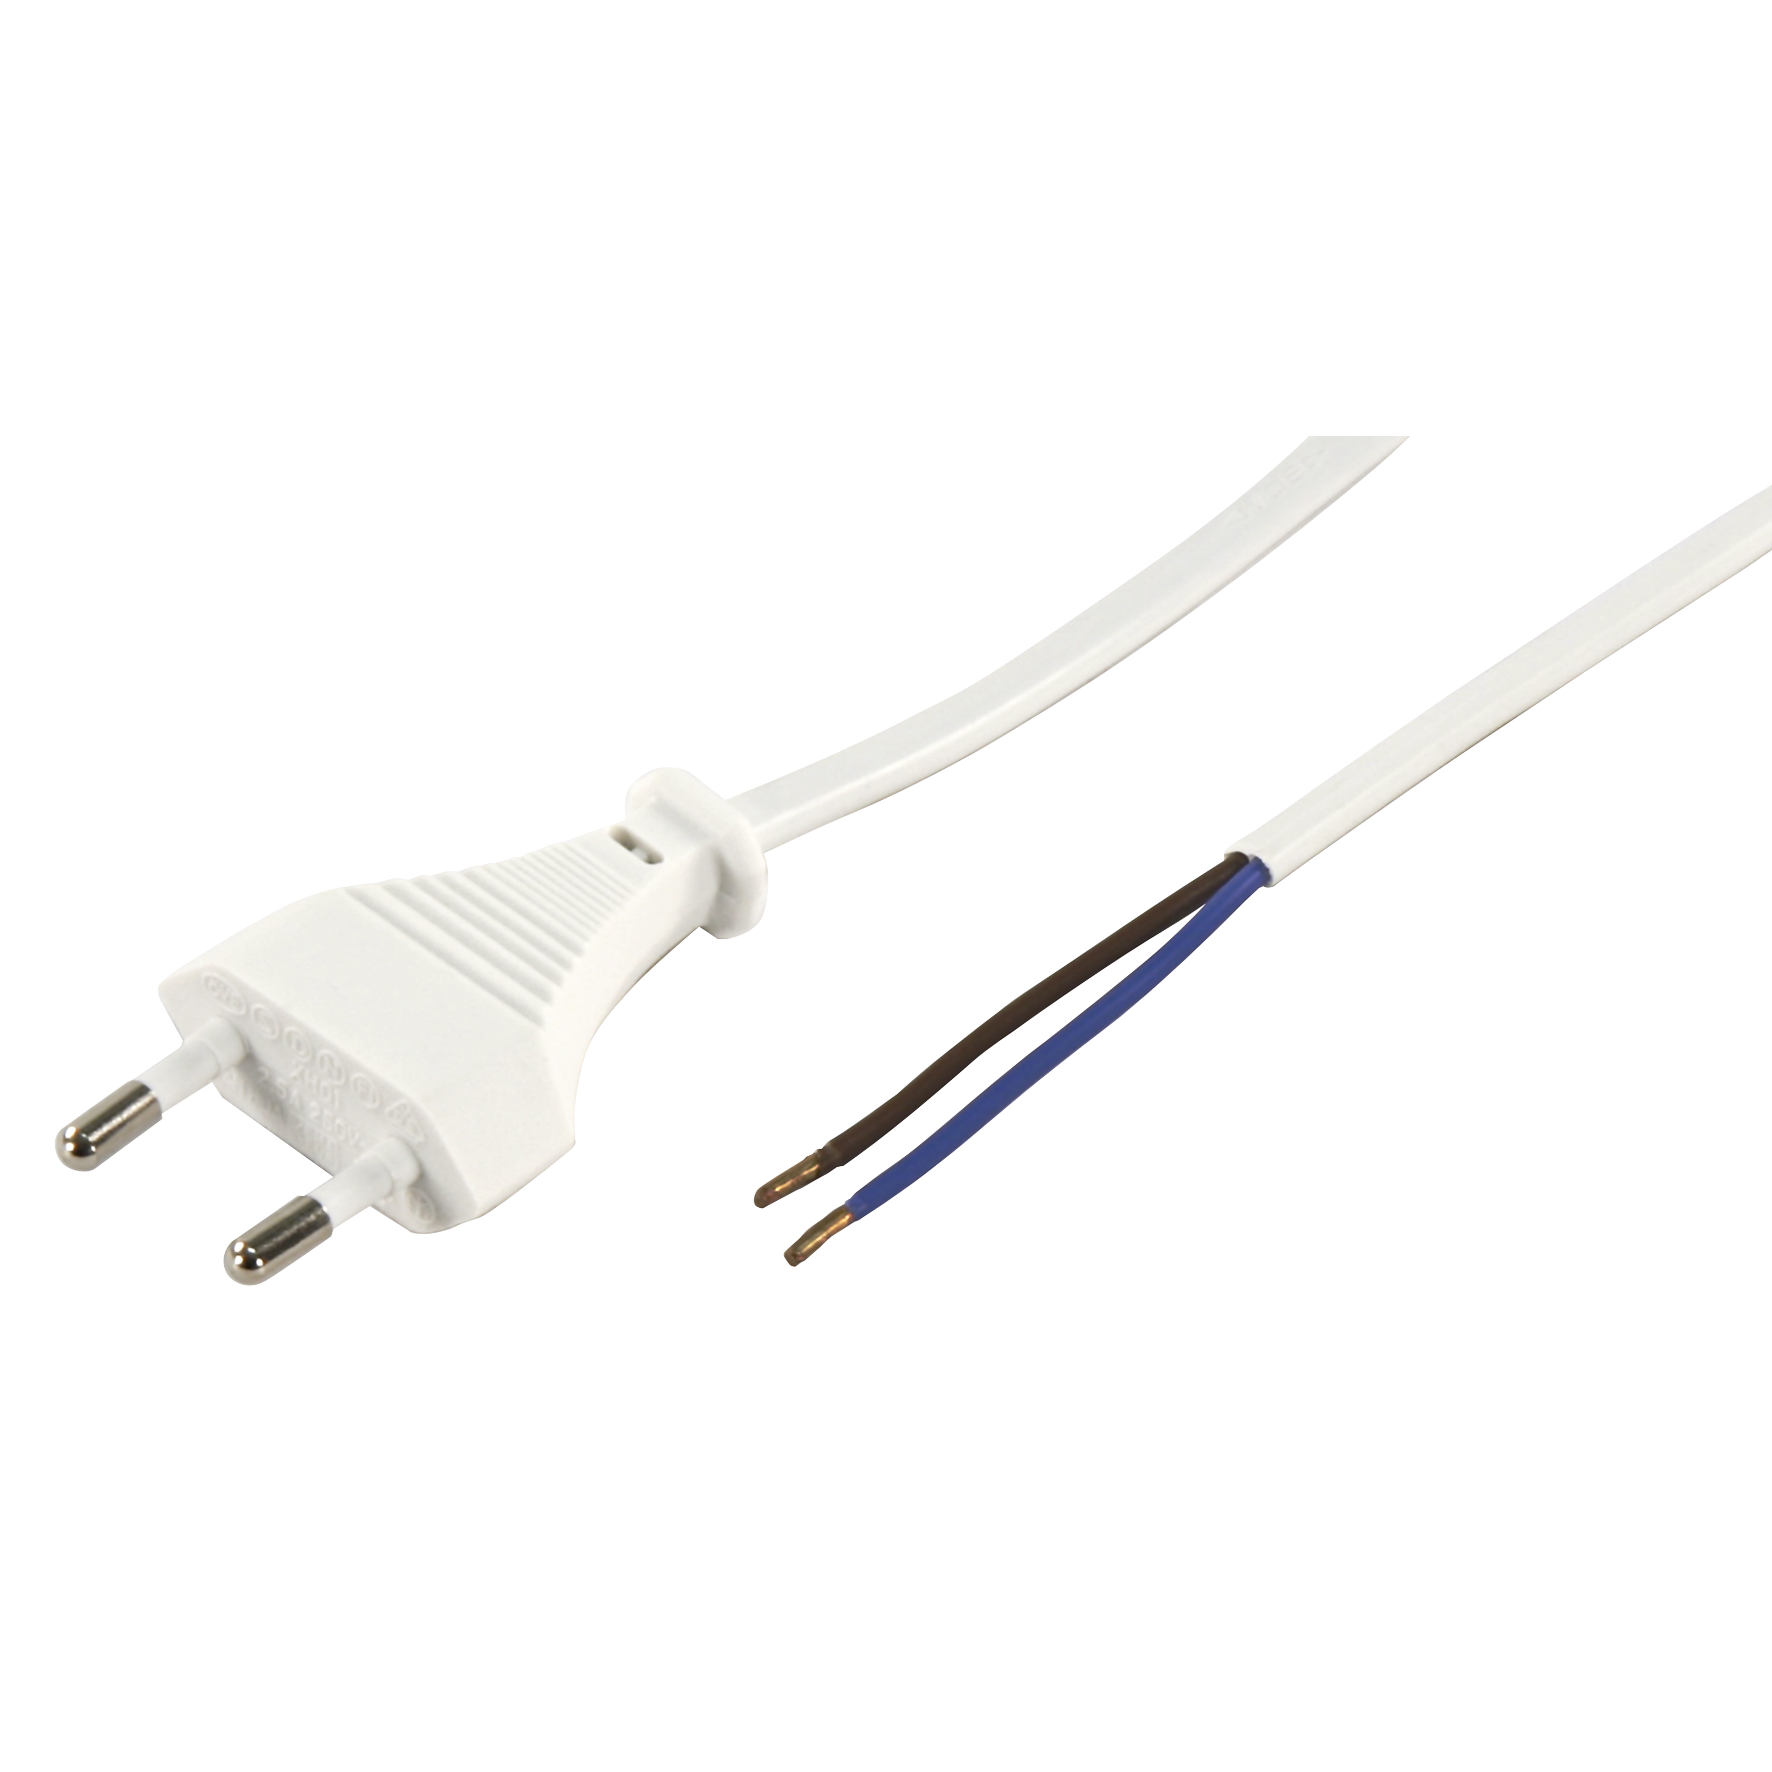 Euro-Netzkabel McPower mit blanken Enden Länge 2m, 2x0,75 mm², weiß